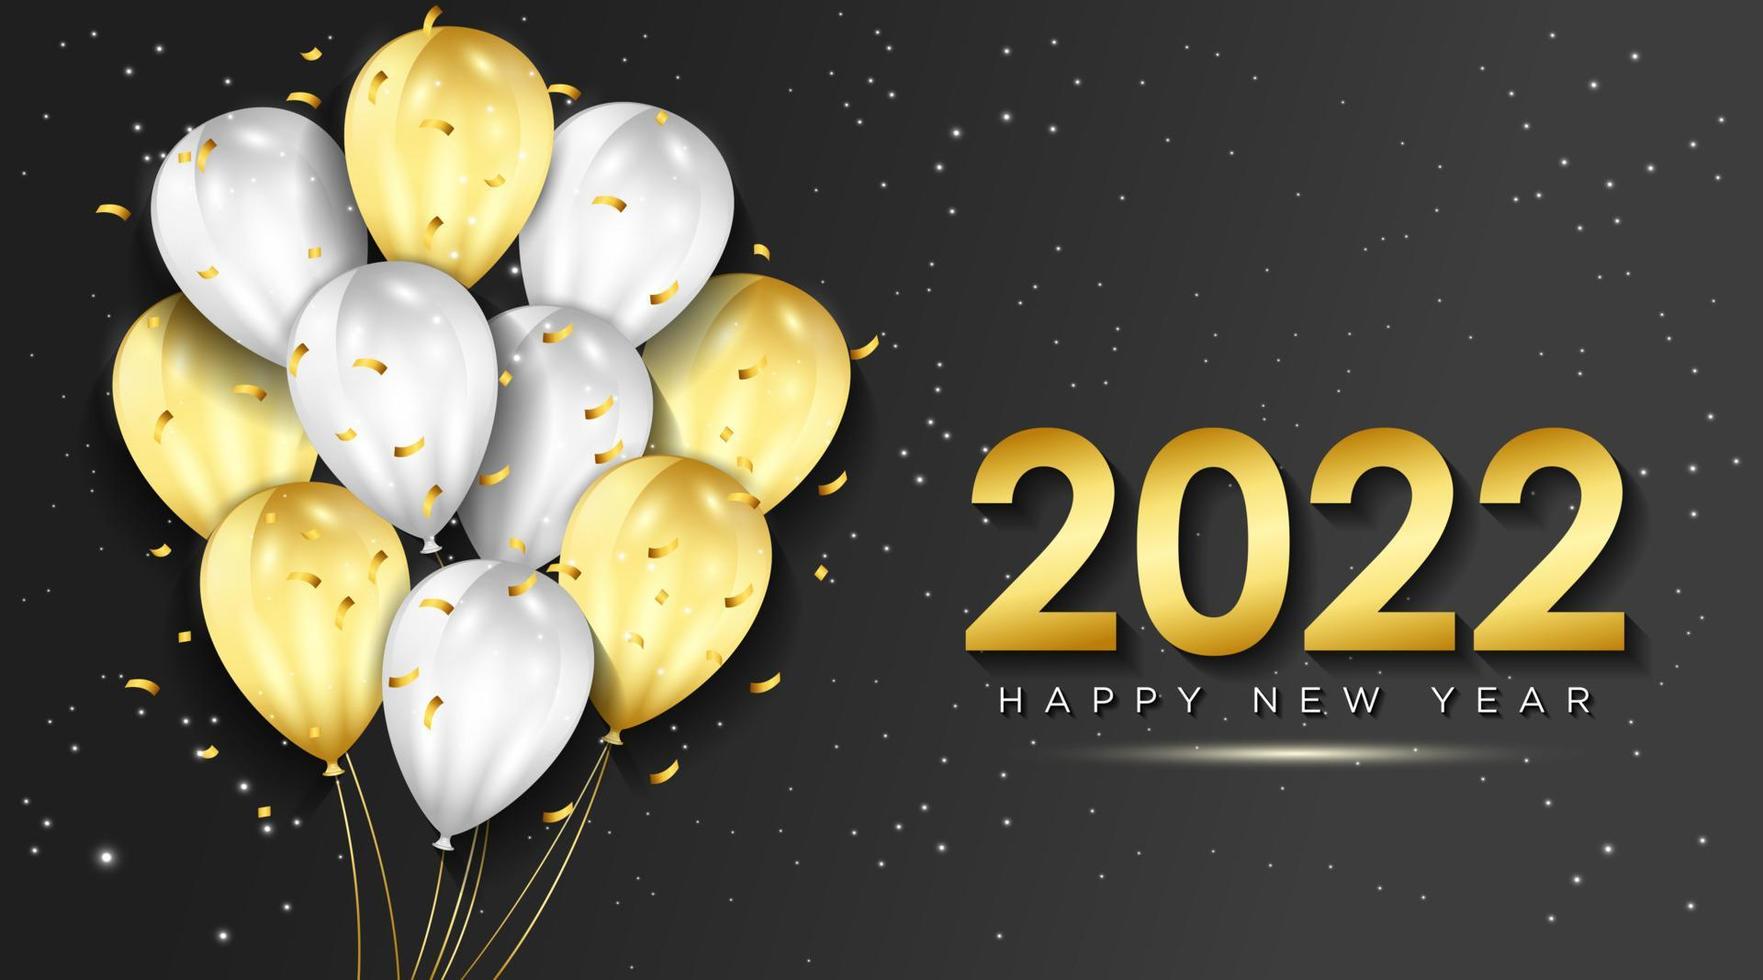 Frohes neues Jahr 2022 Grußkarte mit realistischen goldenen und weißen Ballons Feier Hintergrunddesign für Grußkarten, Poster, Banner. Vektor-Illustration. vektor